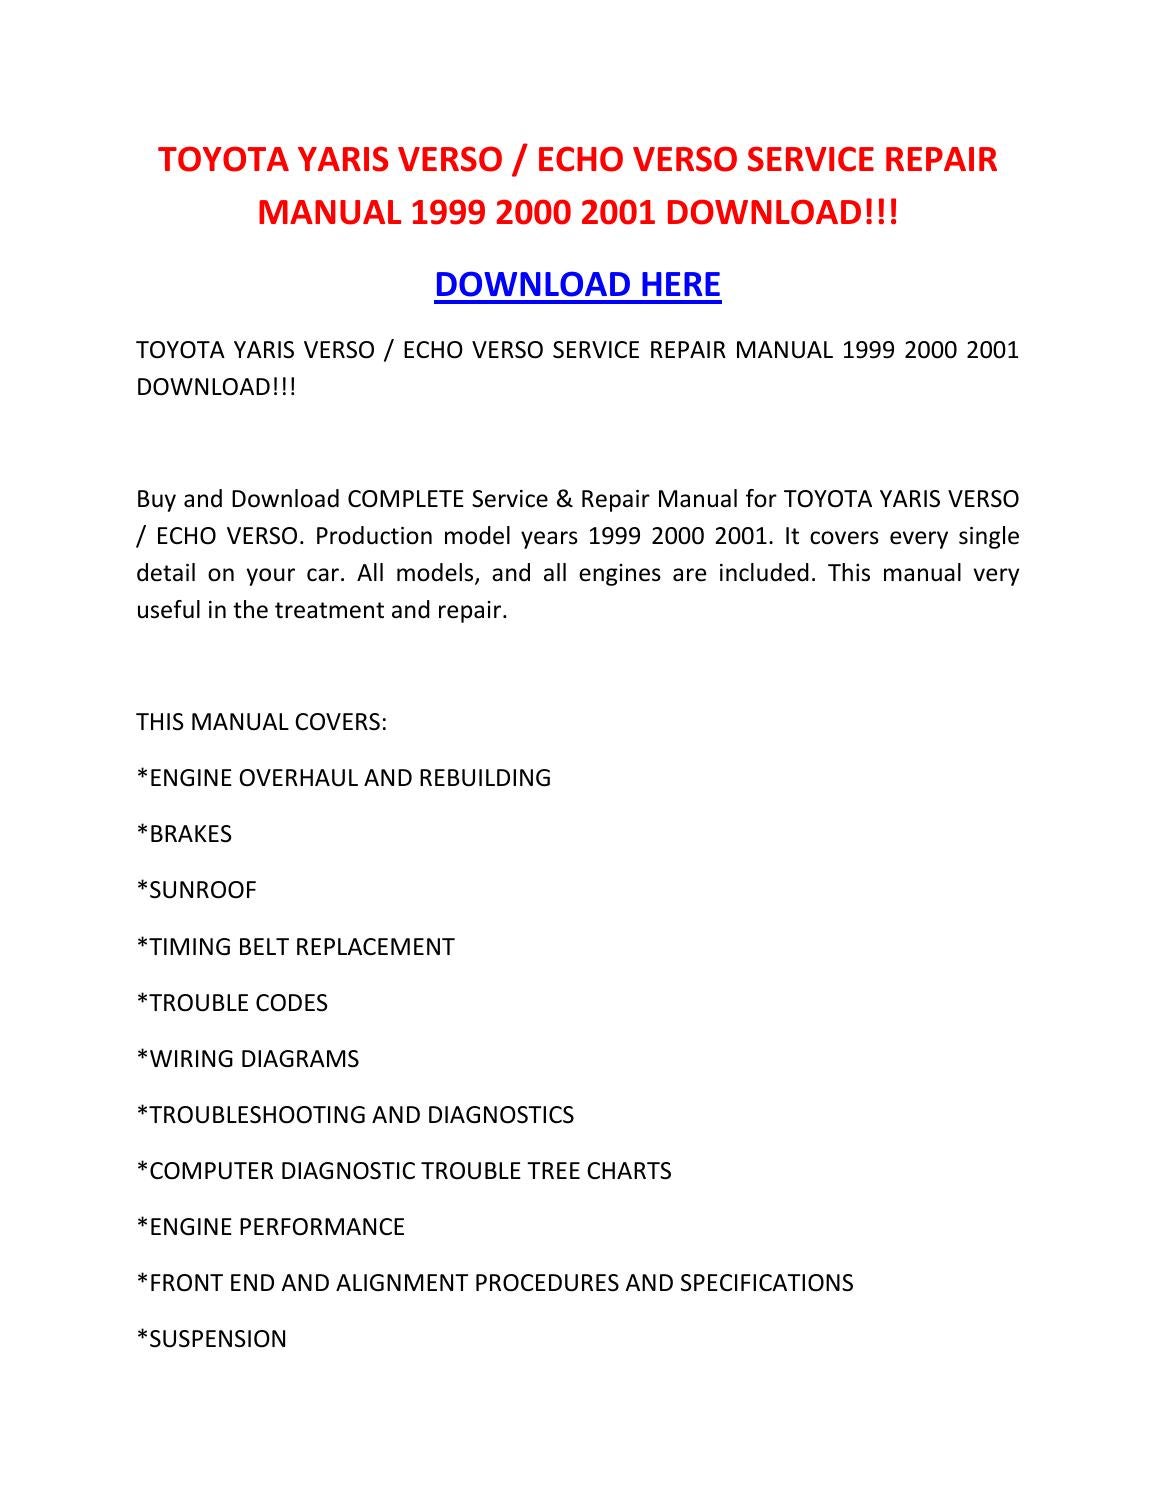 2000 toyota echo repair manual free download